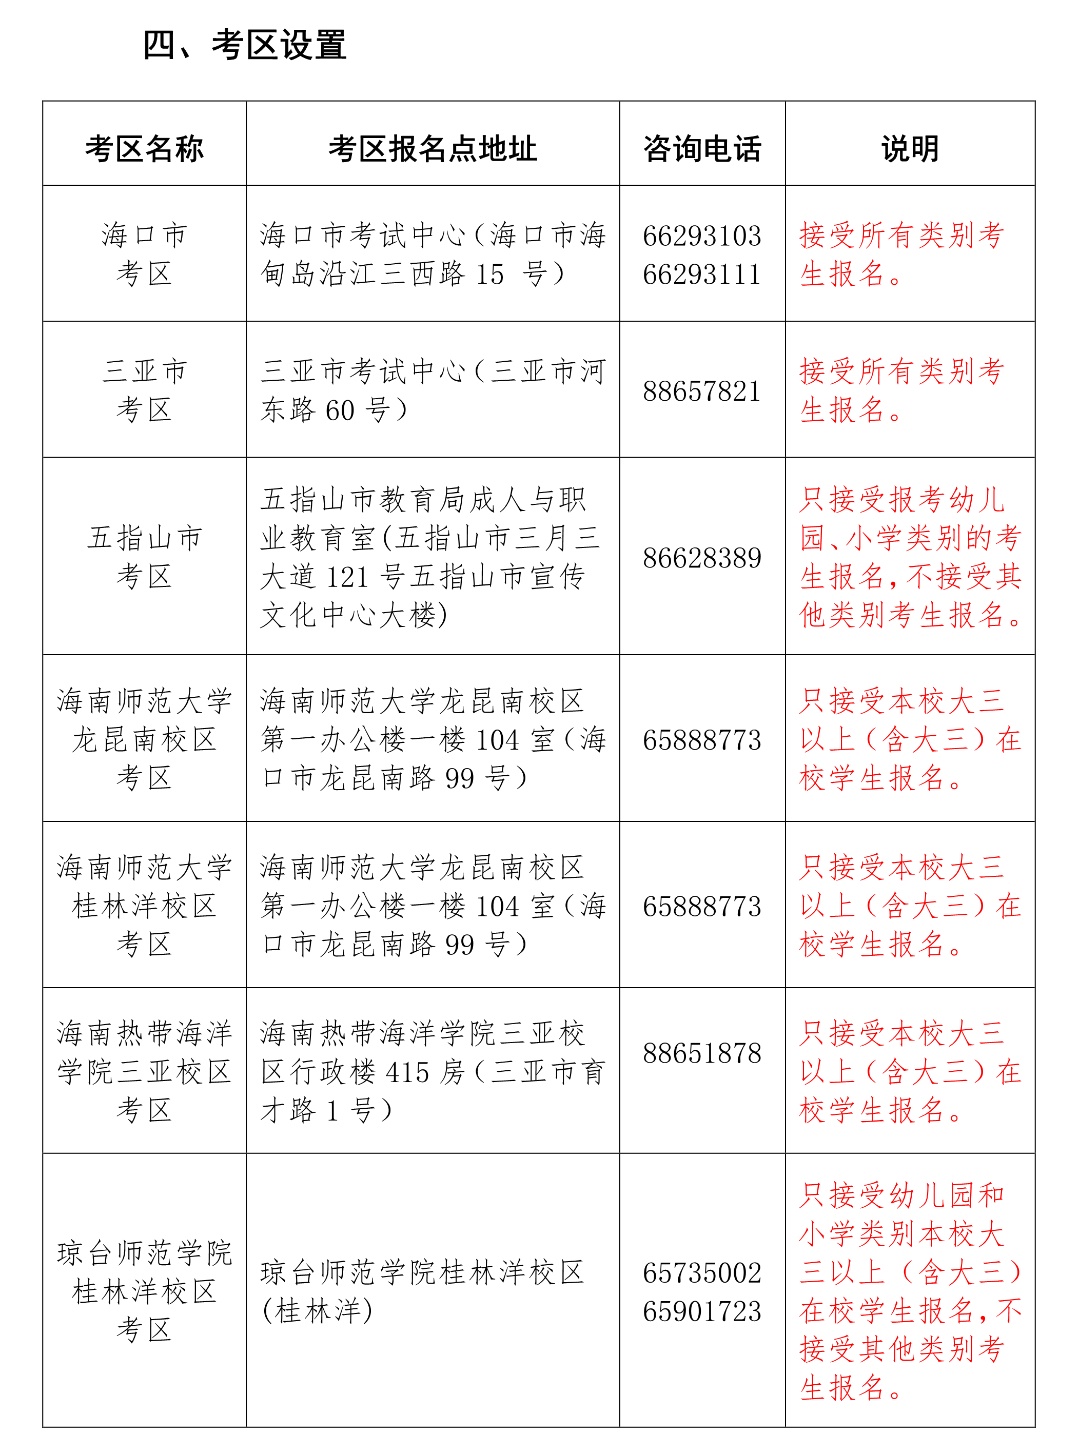 上半年海南省中小学教师资格考试笔试报名14日-17日进行